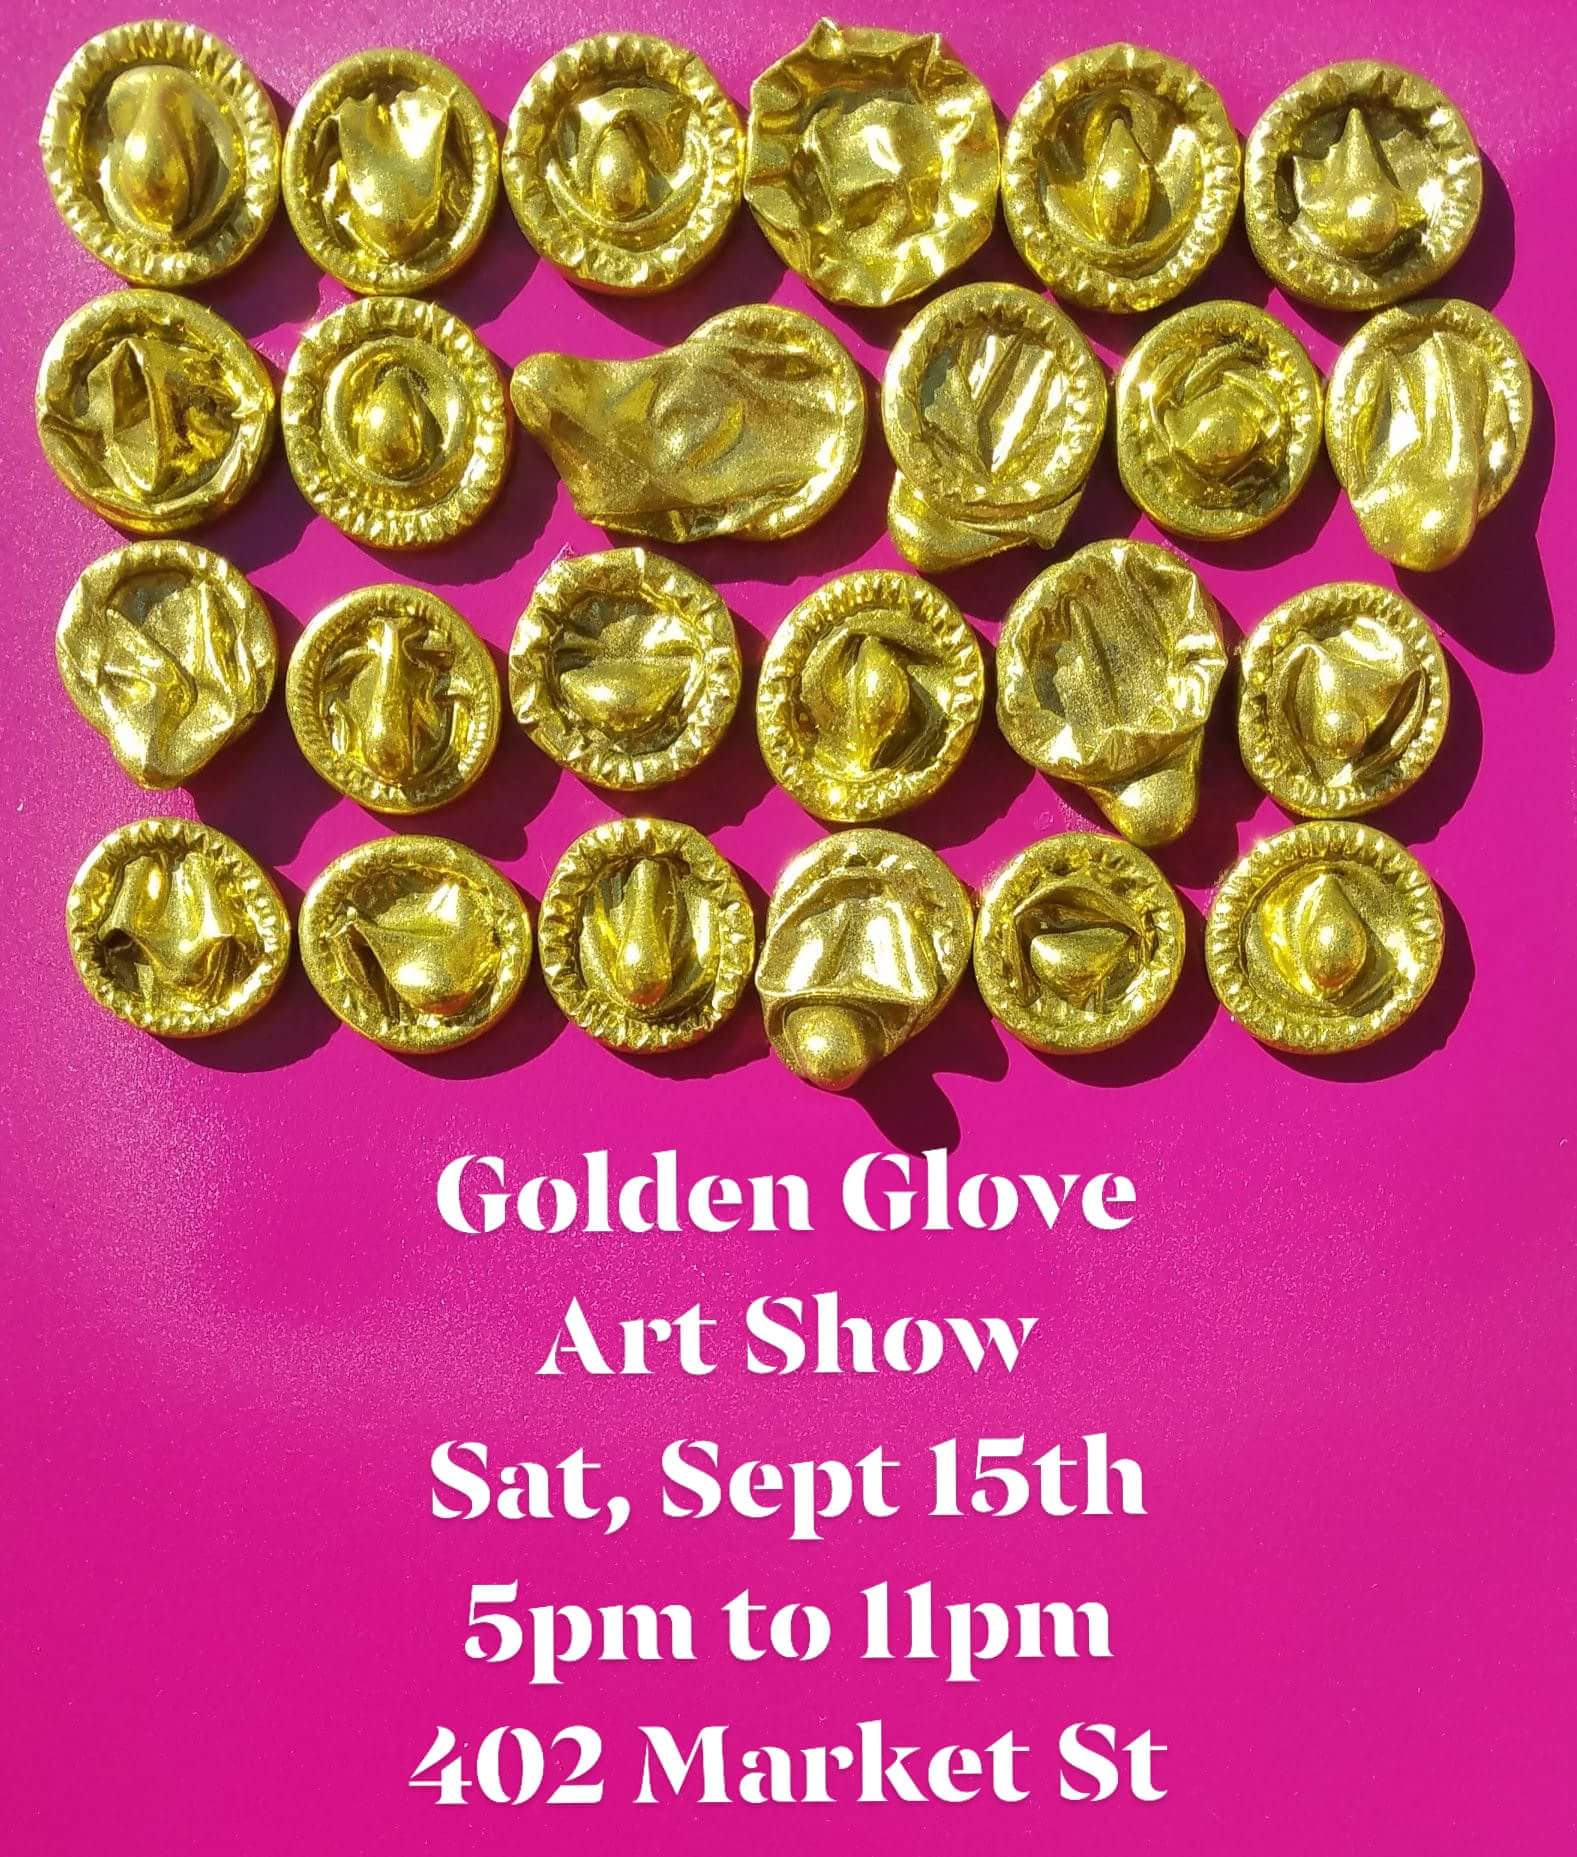 Golden Glove Art Show